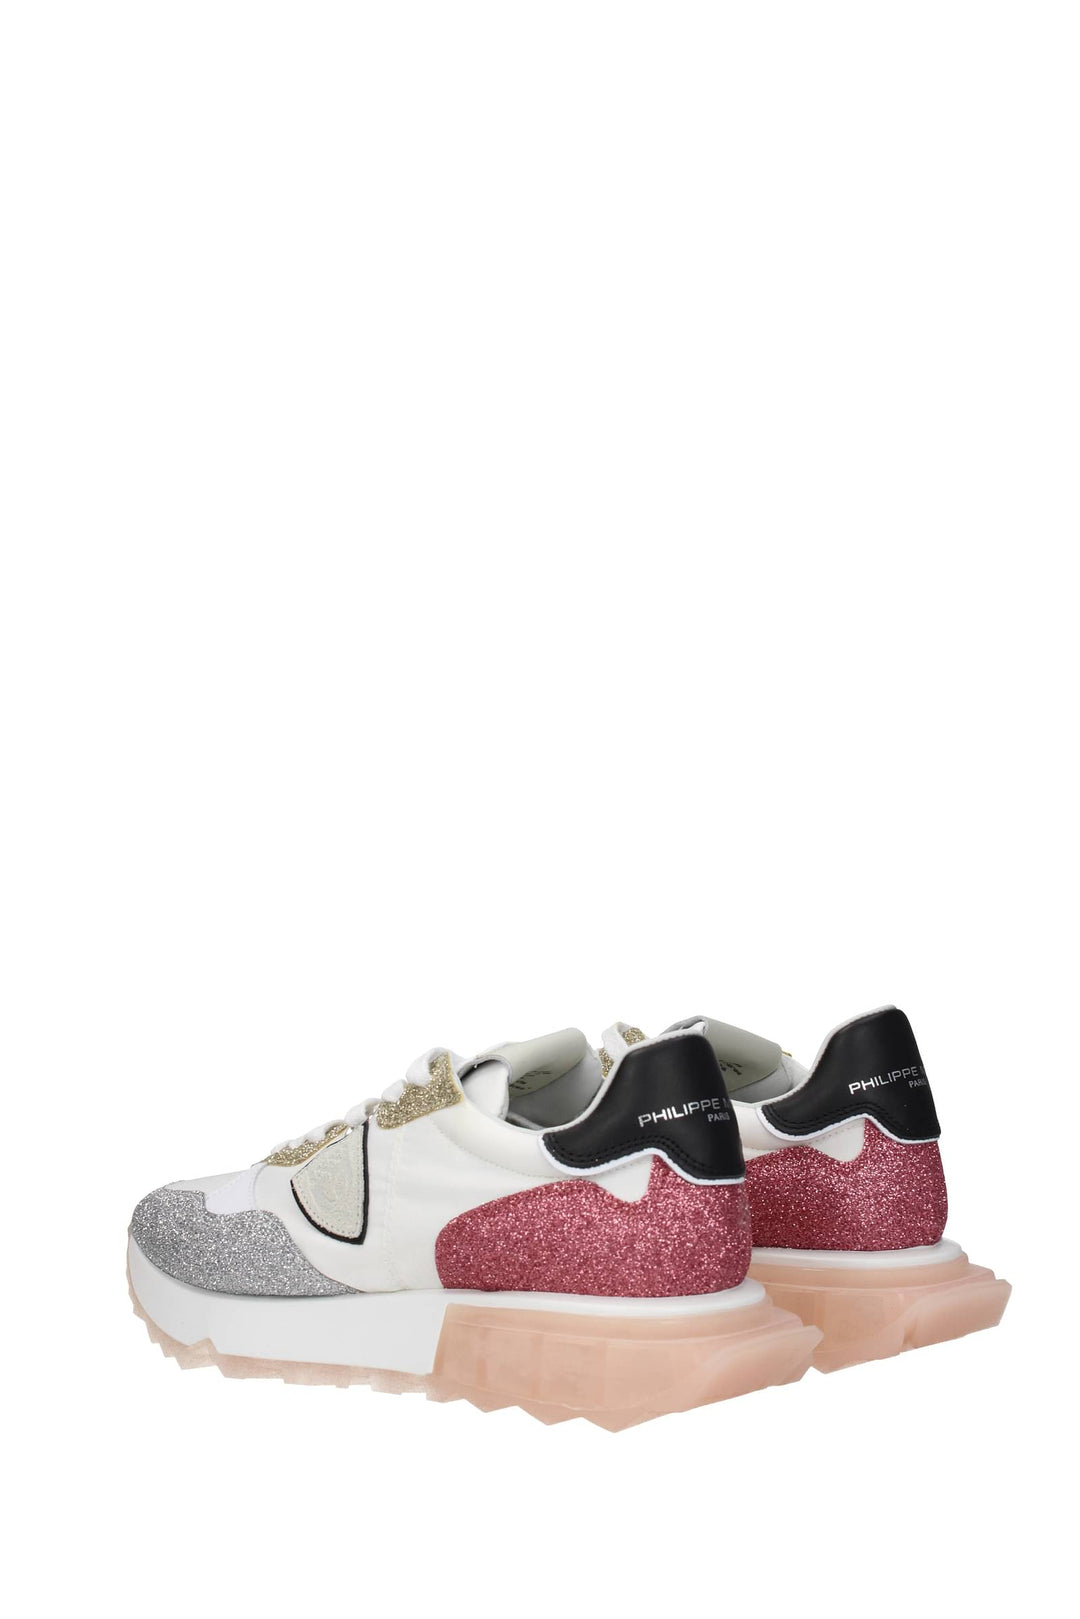 Sneakers La Rue Tessuto Bianco Multicolore - Philippe Model - Donna